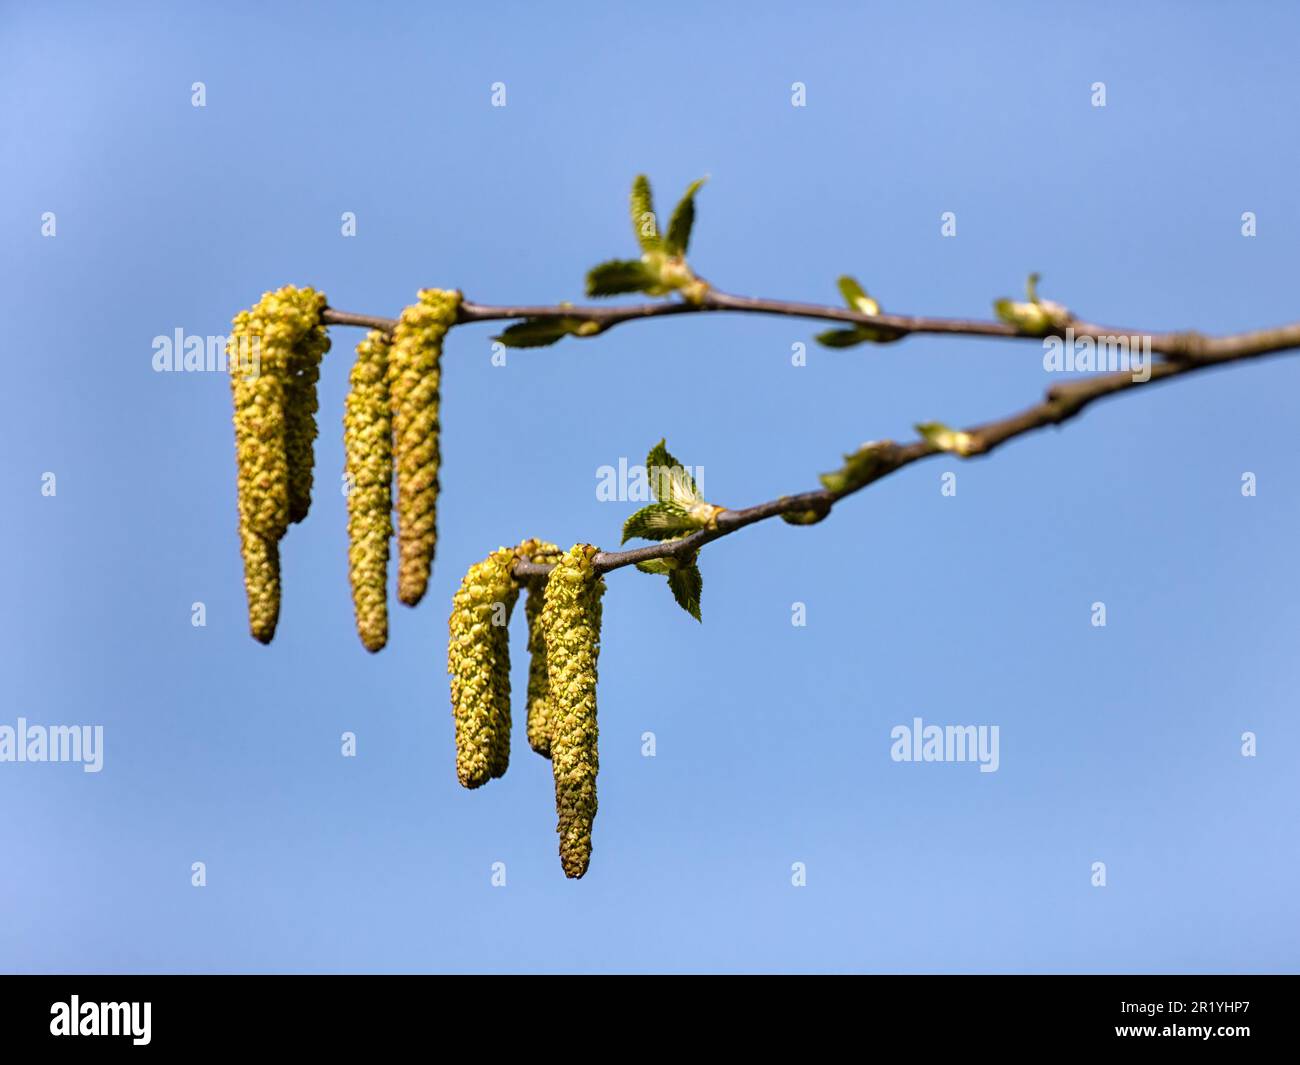 Gros plan de chatons et de nouvelles feuilles de Betula medwediewii isolées contre un ciel bleu Banque D'Images